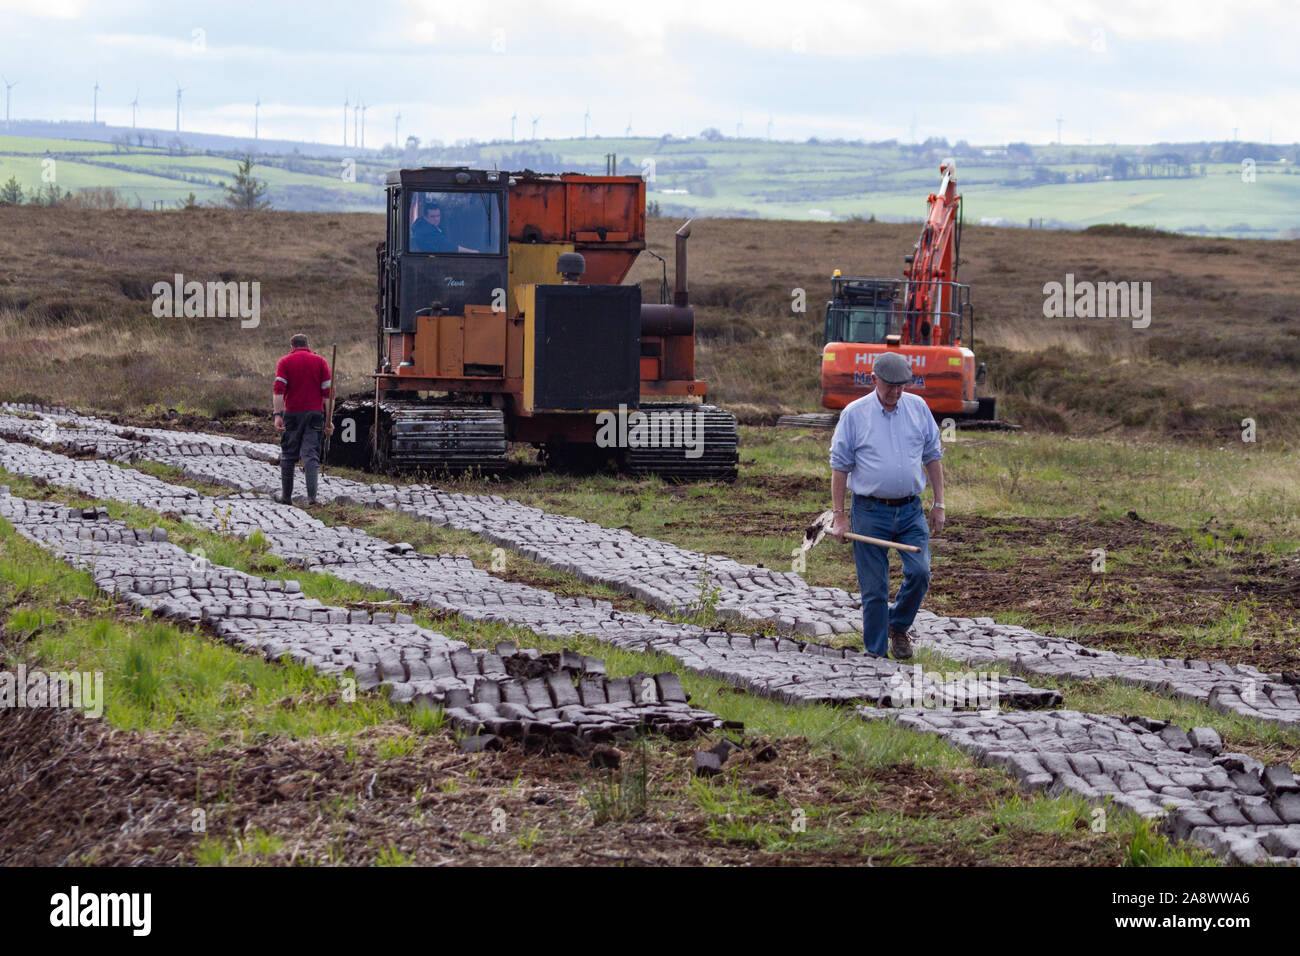 Le comté de Kerry, Irlande - 30 avril 2019 : les hommes et les machines lourdes cultiver tourbière de carburant dans la campagne irlandaise Banque D'Images